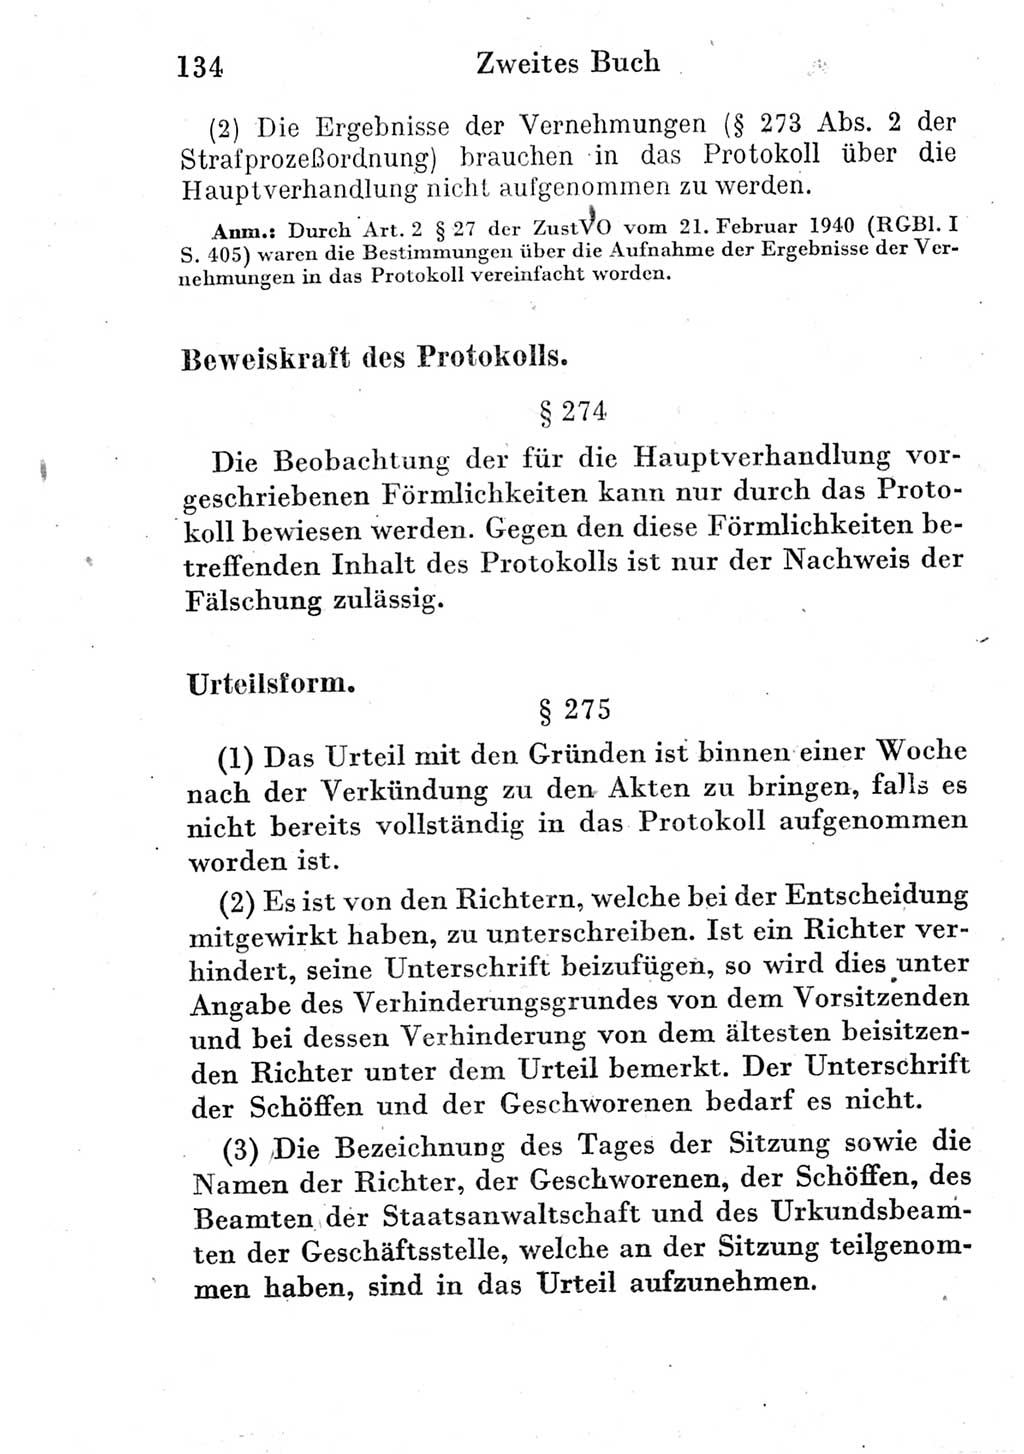 Strafprozeßordnung (StPO), Gerichtsverfassungsgesetz (GVG) und zahlreiche Nebengesetze der Deutschen Demokratischen Republik (DDR) 1950, Seite 134 (StPO GVG Ges. DDR 1950, S. 134)